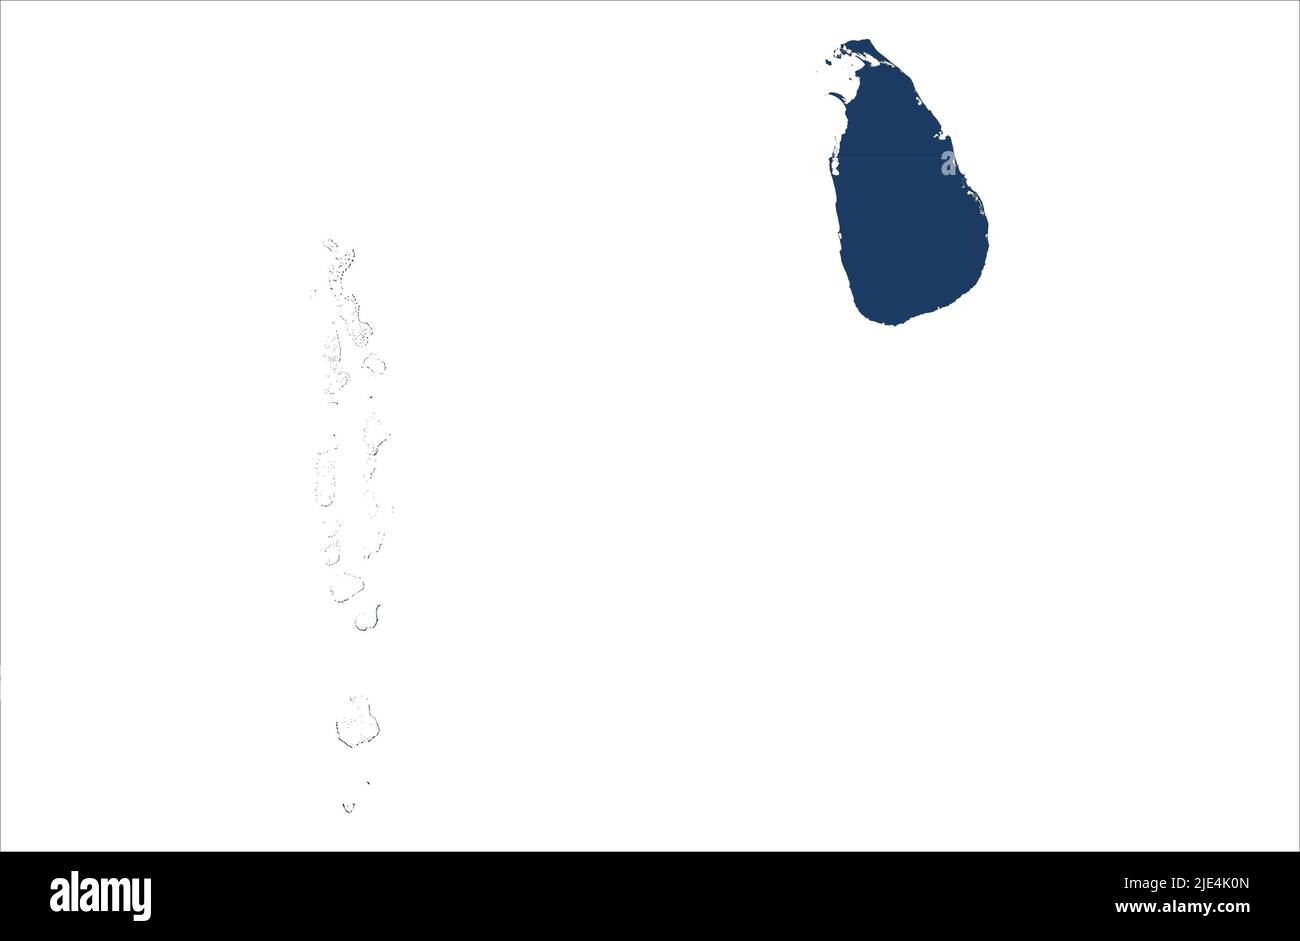 Illustration de la carte vectorielle du SriLanka et des Maldives sur fond blanc Banque D'Images